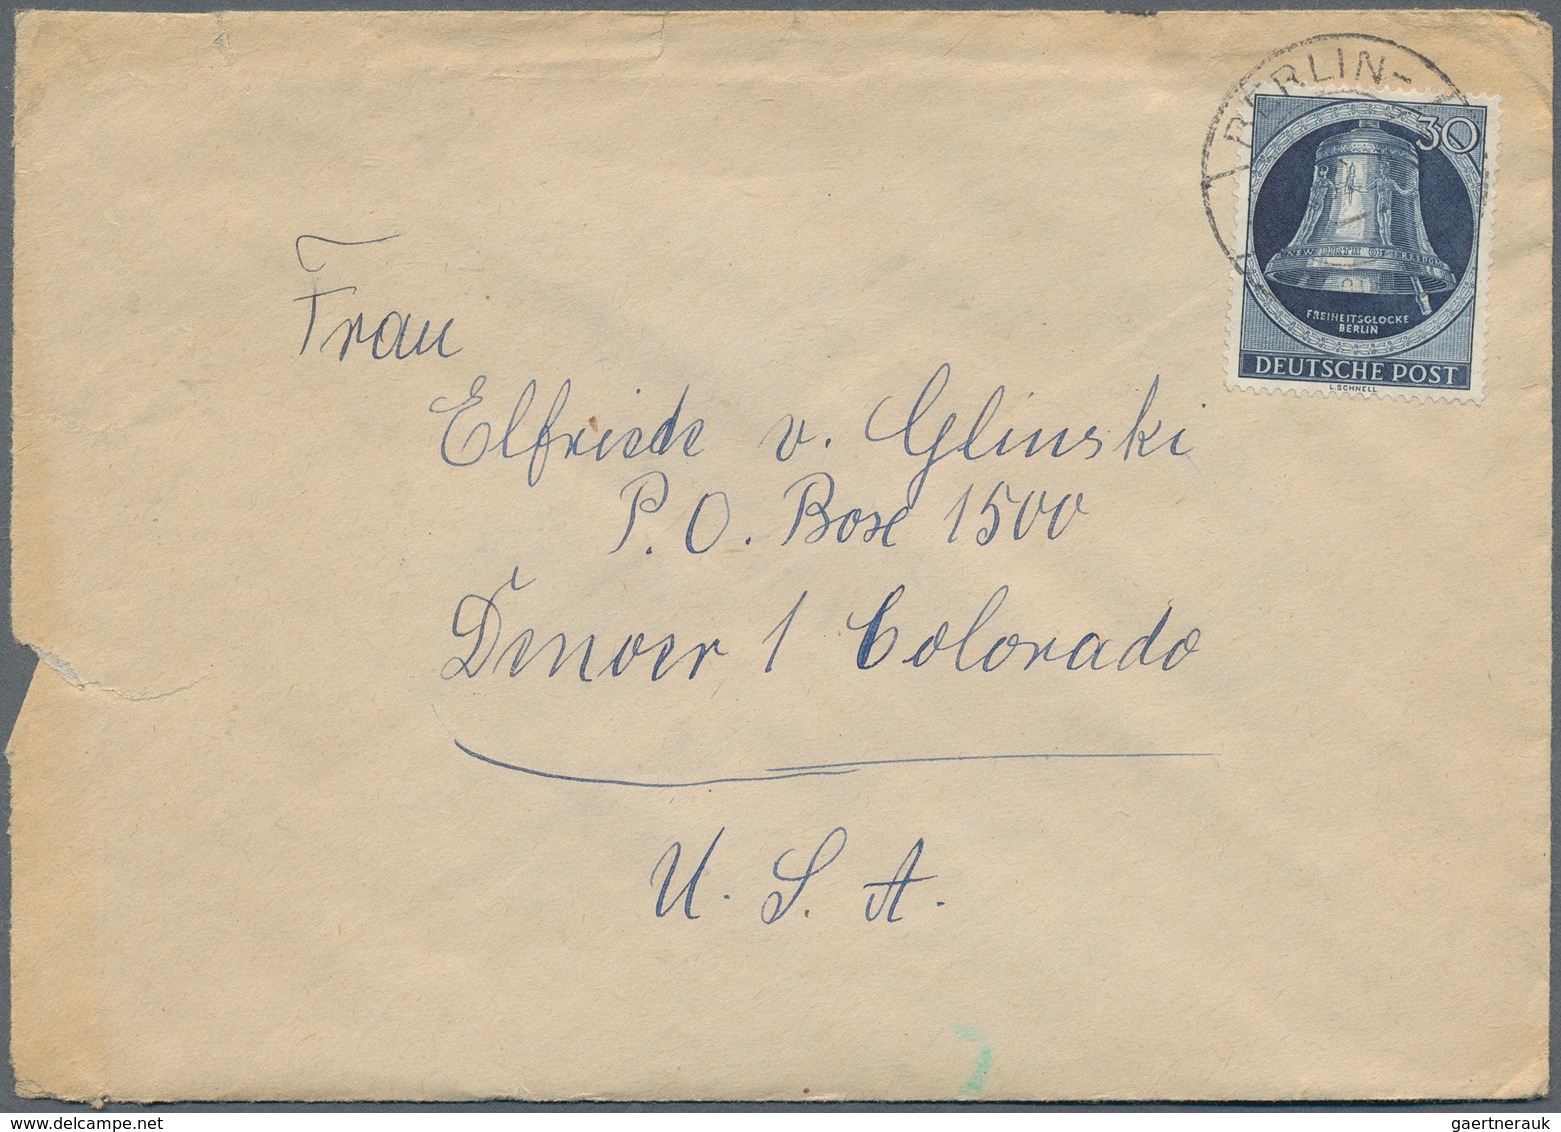 32511 Berlin: 1952/1960, vielseitiger Posten von ca. 195 Briefen und Karten aus alter Familien-Korresponde